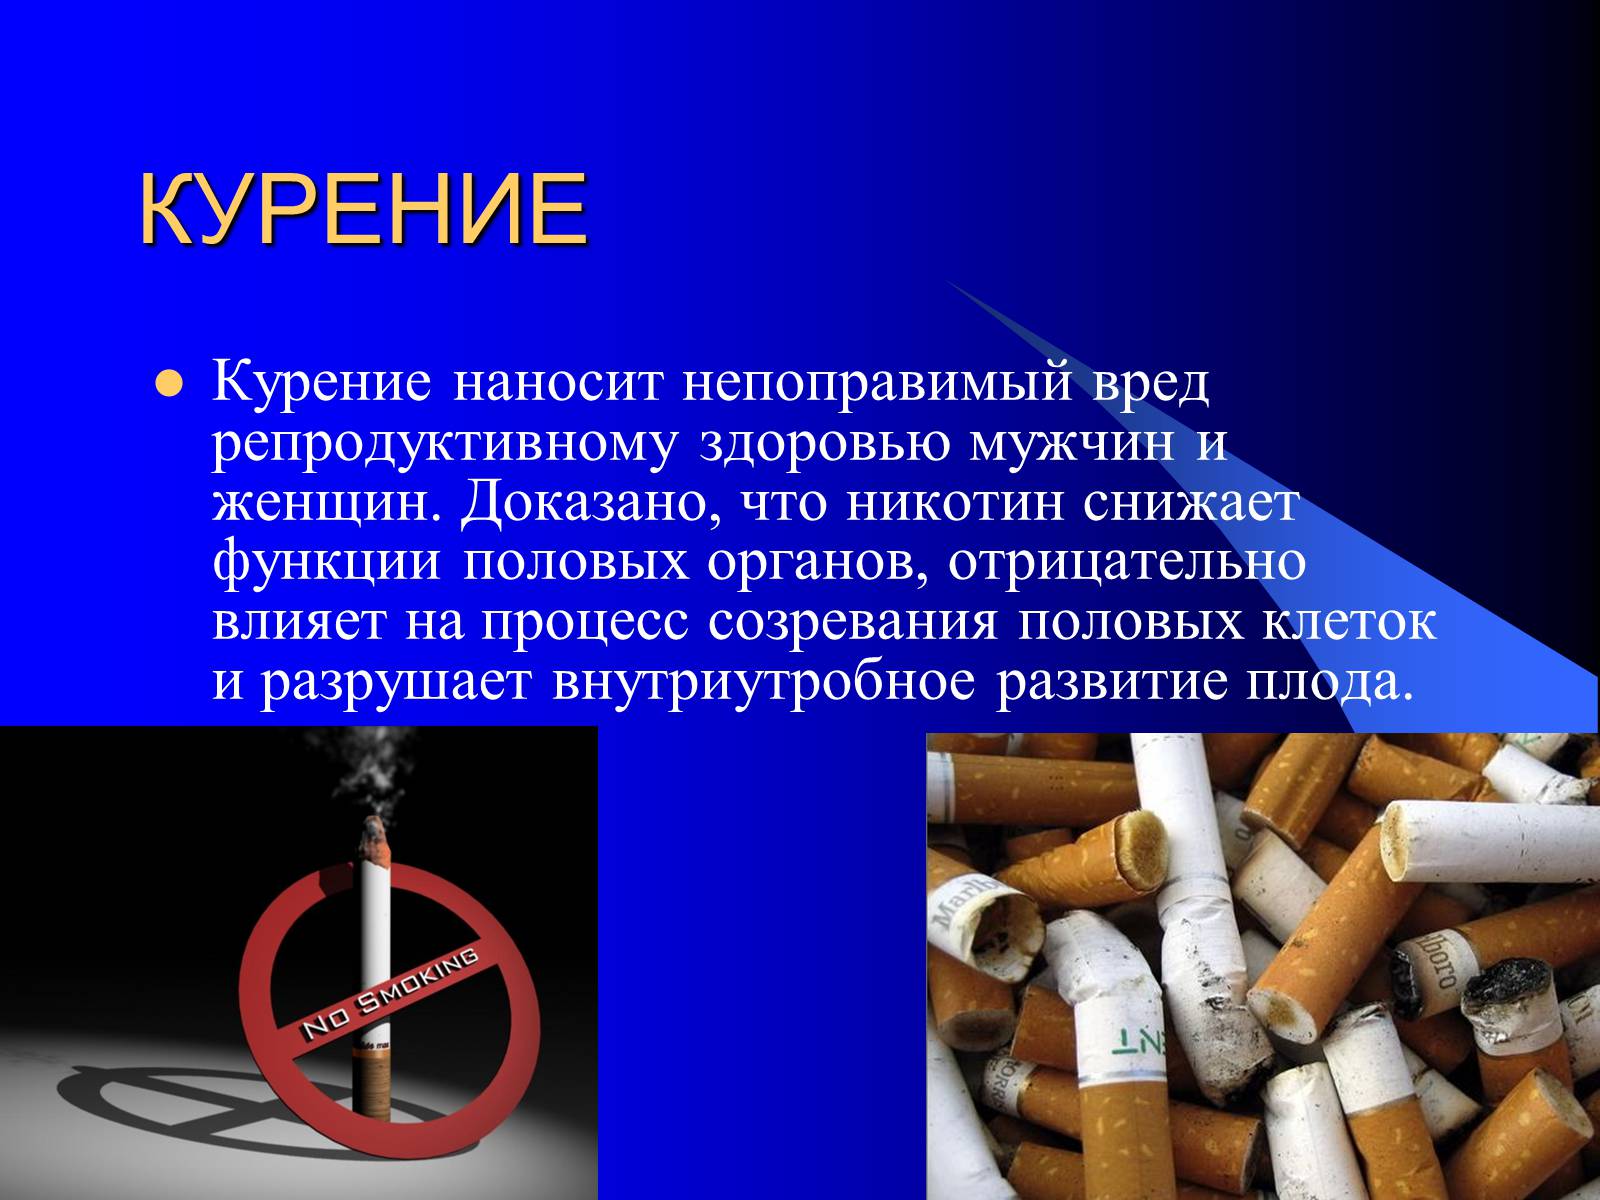 Чем вредны сигареты для здоровья. Влияние вредных привычек на организм. Влияние табакокурения на репродуктивное здоровье. Влияние курения на репродуктивную систему человека. Влияние табакокурения на репродуктивную систему.